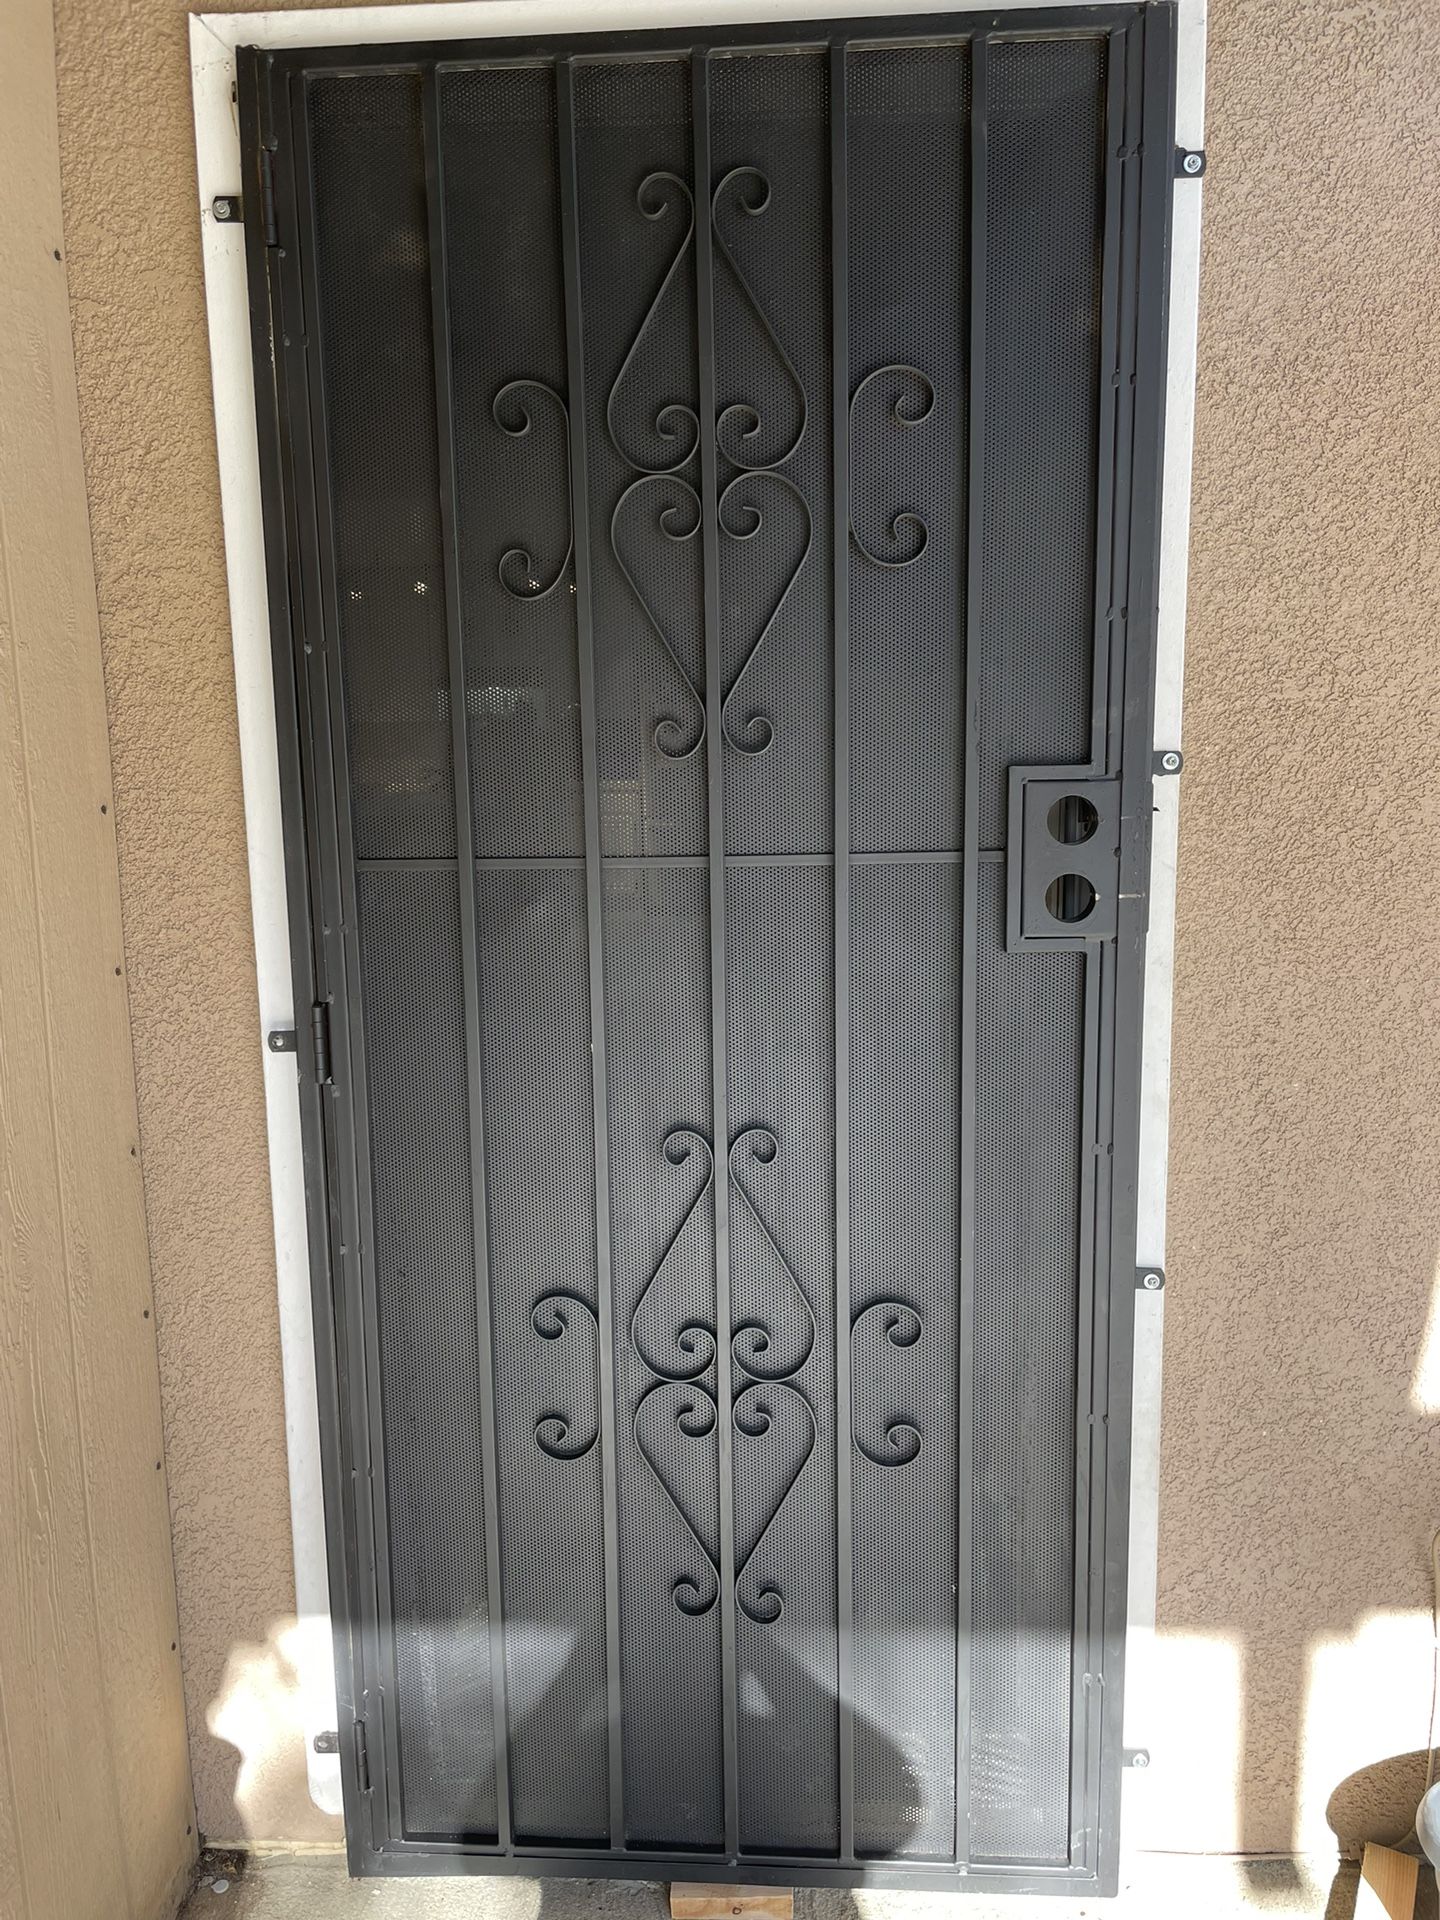 Security Door 